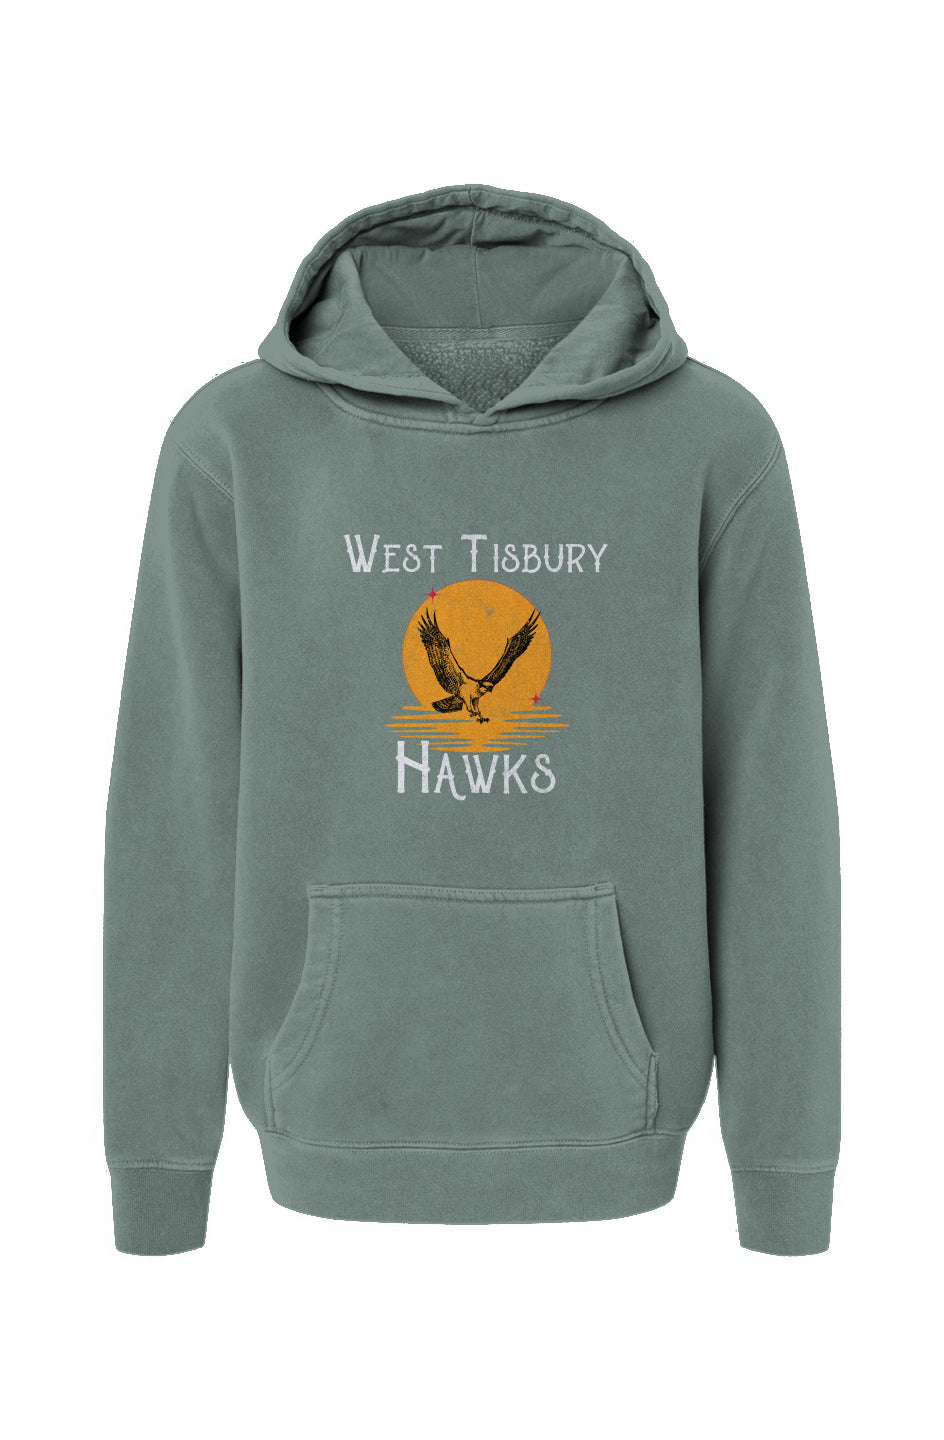 West Tisbury Hawks Youth Hoodie